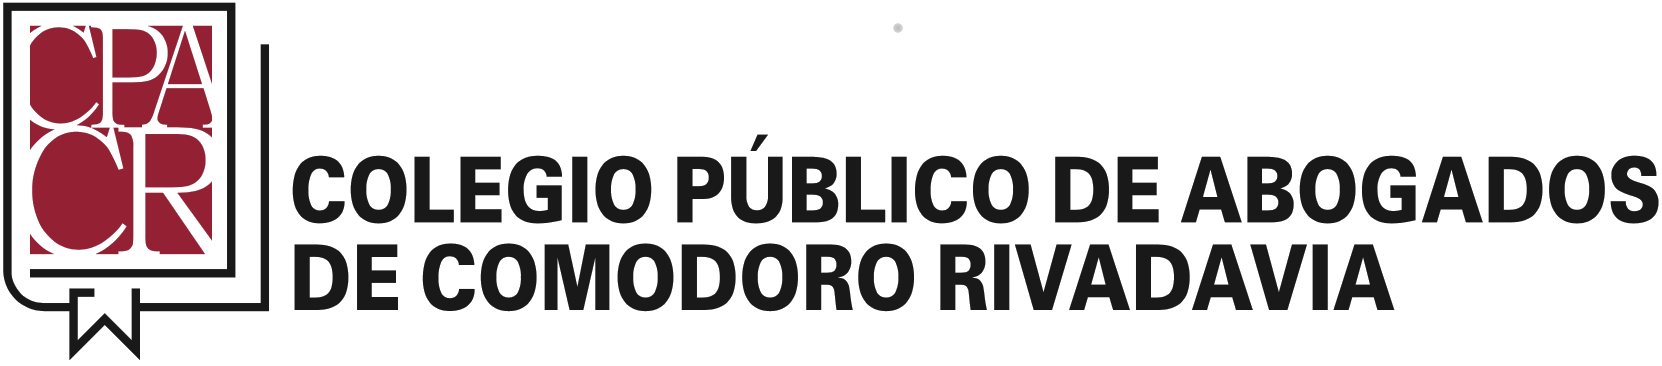 Colegio Público de Abogados de Comodoro Rivadavia